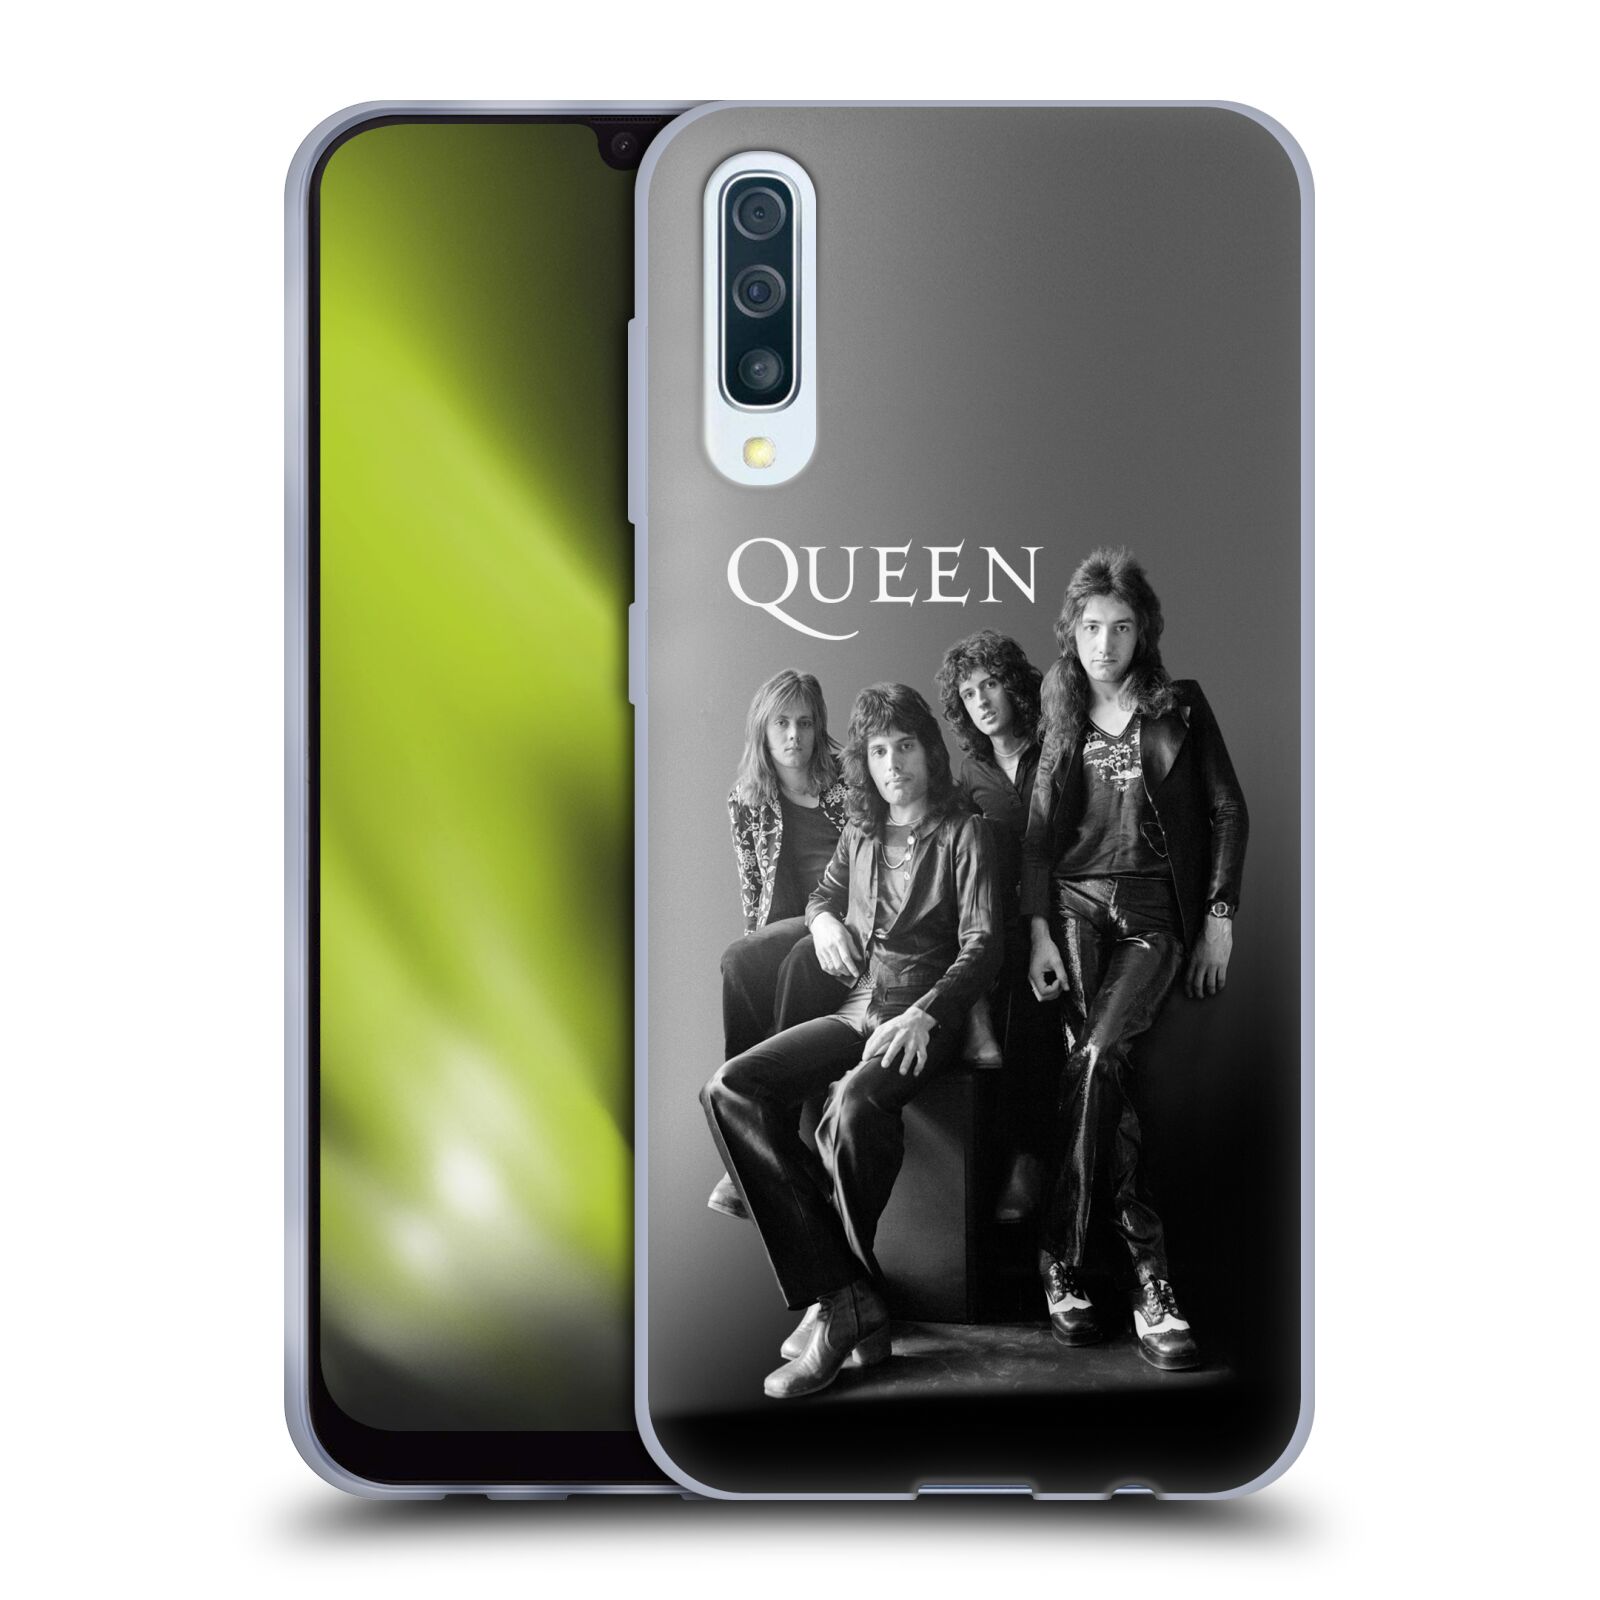 Silikonové pouzdro na mobil Samsung Galaxy A50 / A30s - Head Case - Queen - Skupina (Silikonový kryt, obal, pouzdro na mobilní telefon Samsung Galaxy A50 / A30s z roku 2019 s motivem Queen - Skupina)